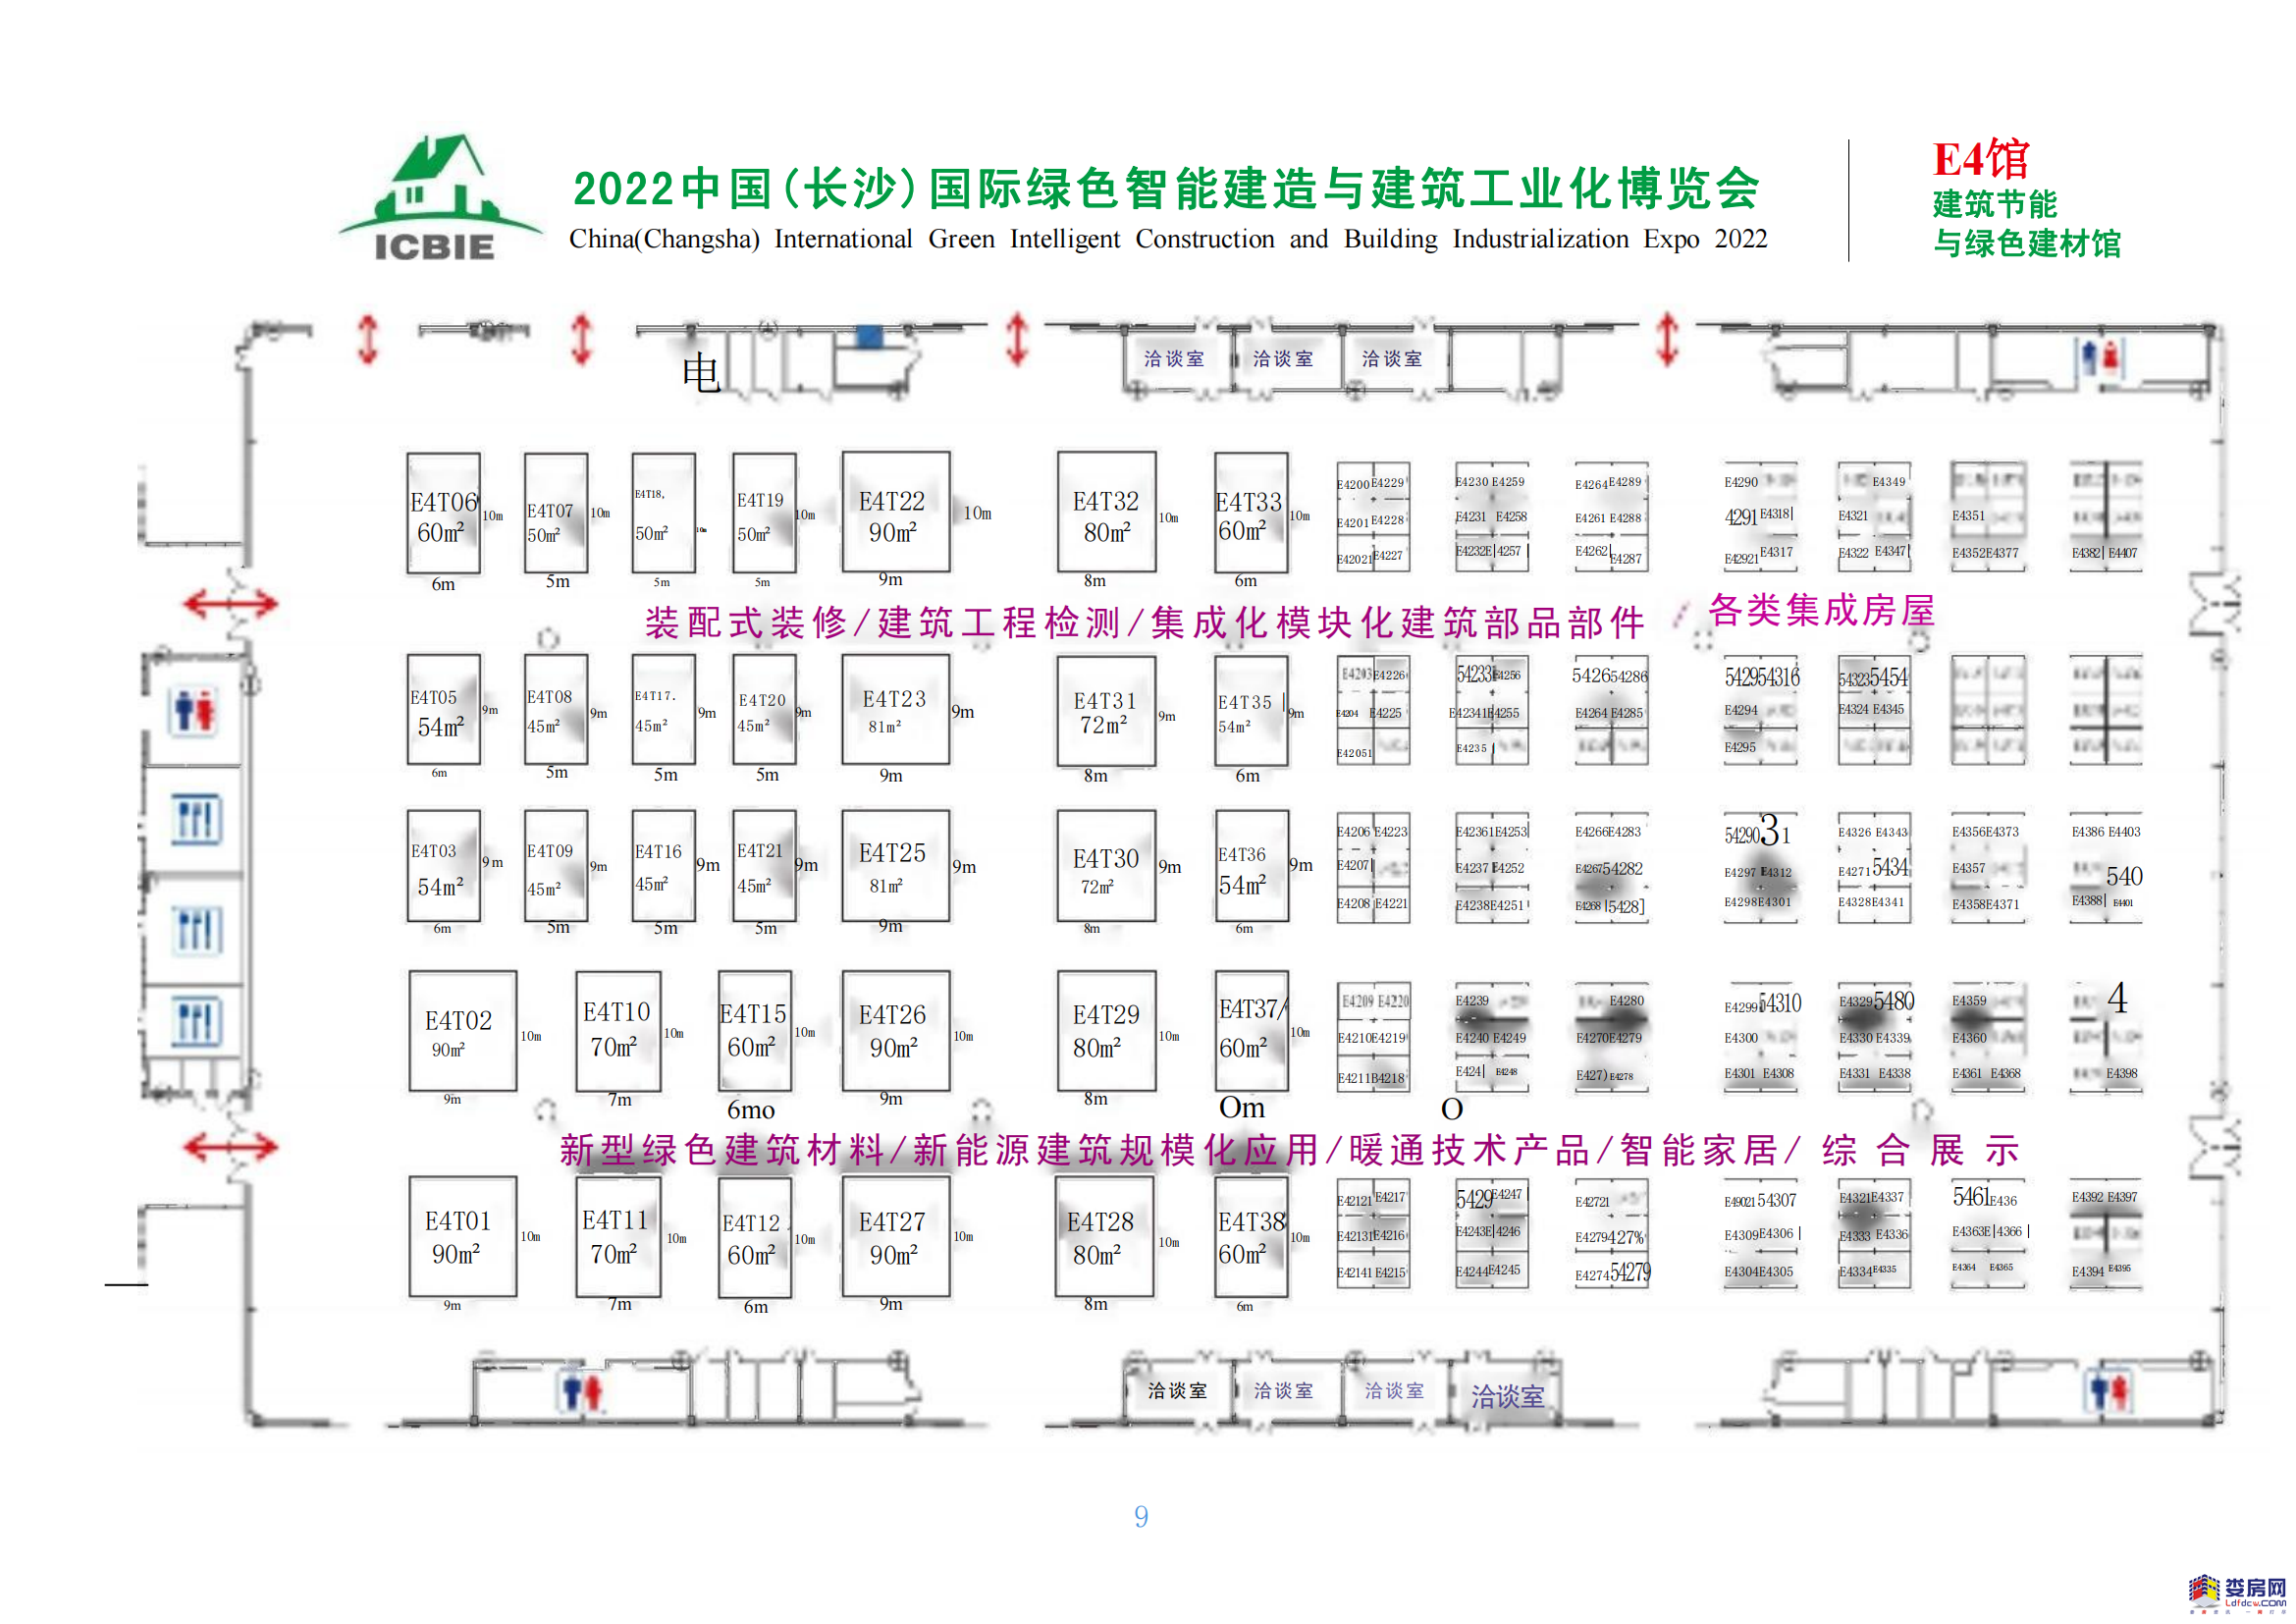 2022中国（长沙）国际绿色智能建造与建筑工业化博览会邀请函_09(1).png